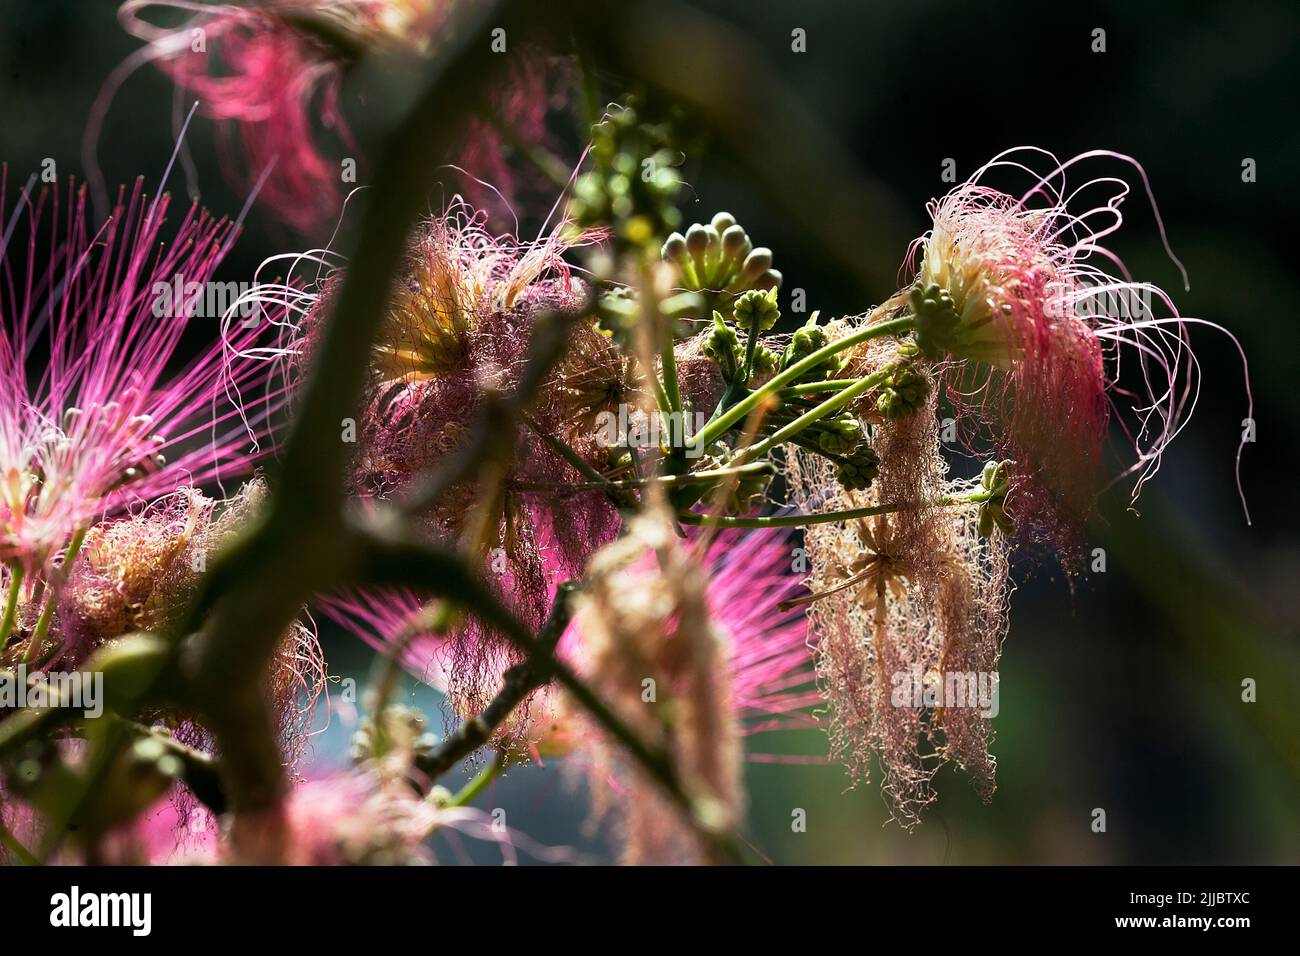 Silk tree flowers. Stock Photo